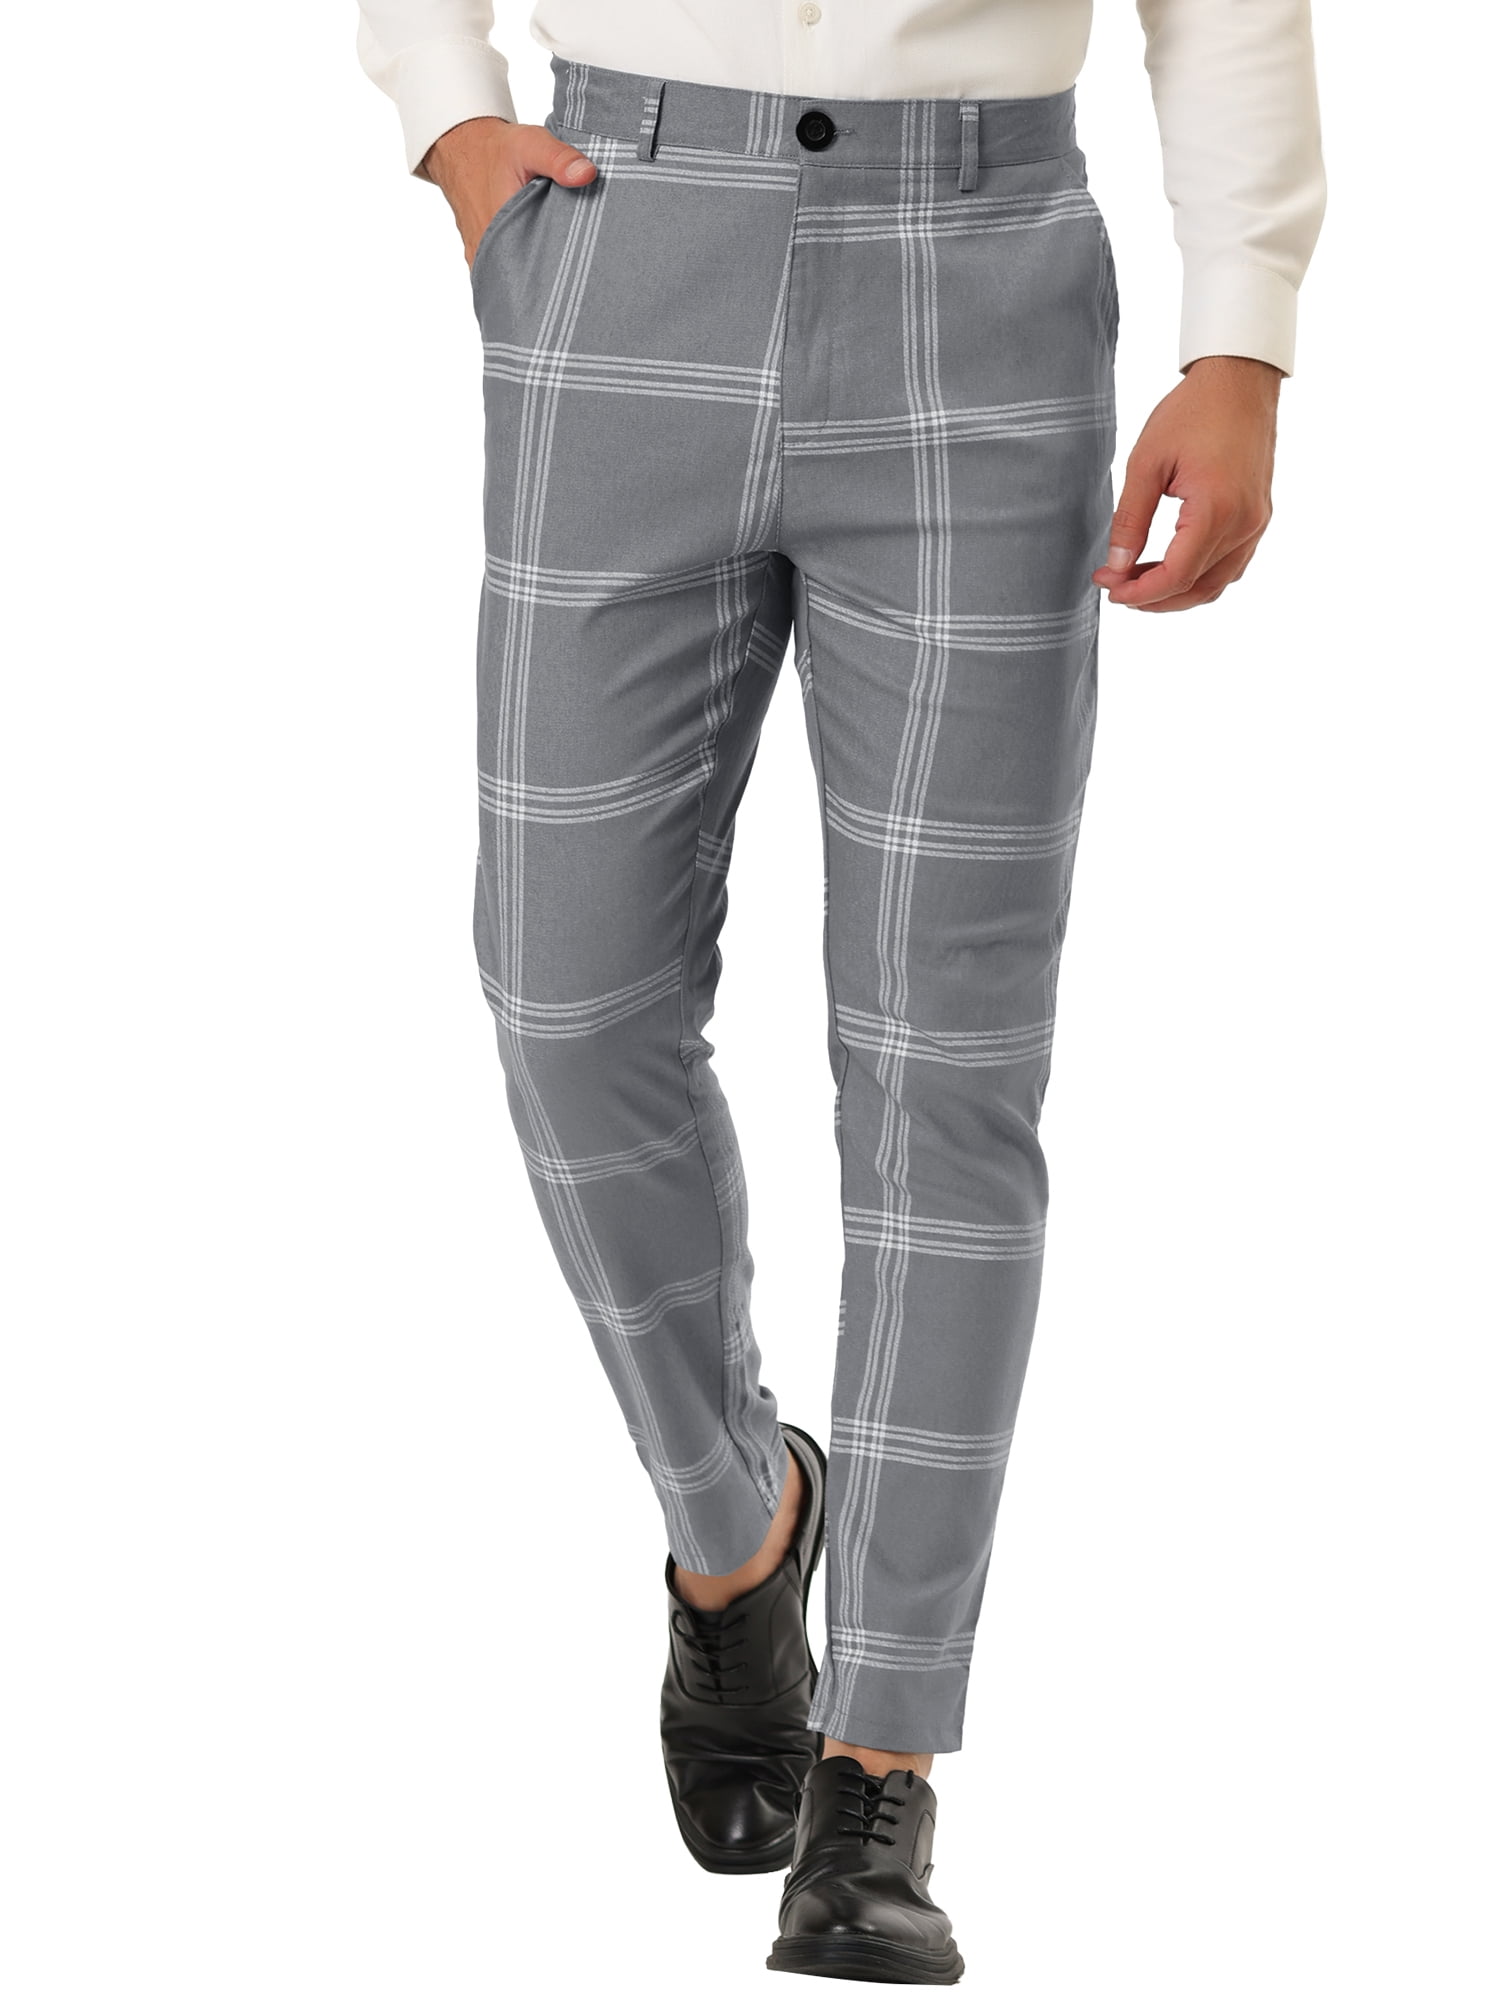 Men's Dress Plaid Pants Slim Fit Flat Front Checked Business Suit Trousers  - Walmart.com